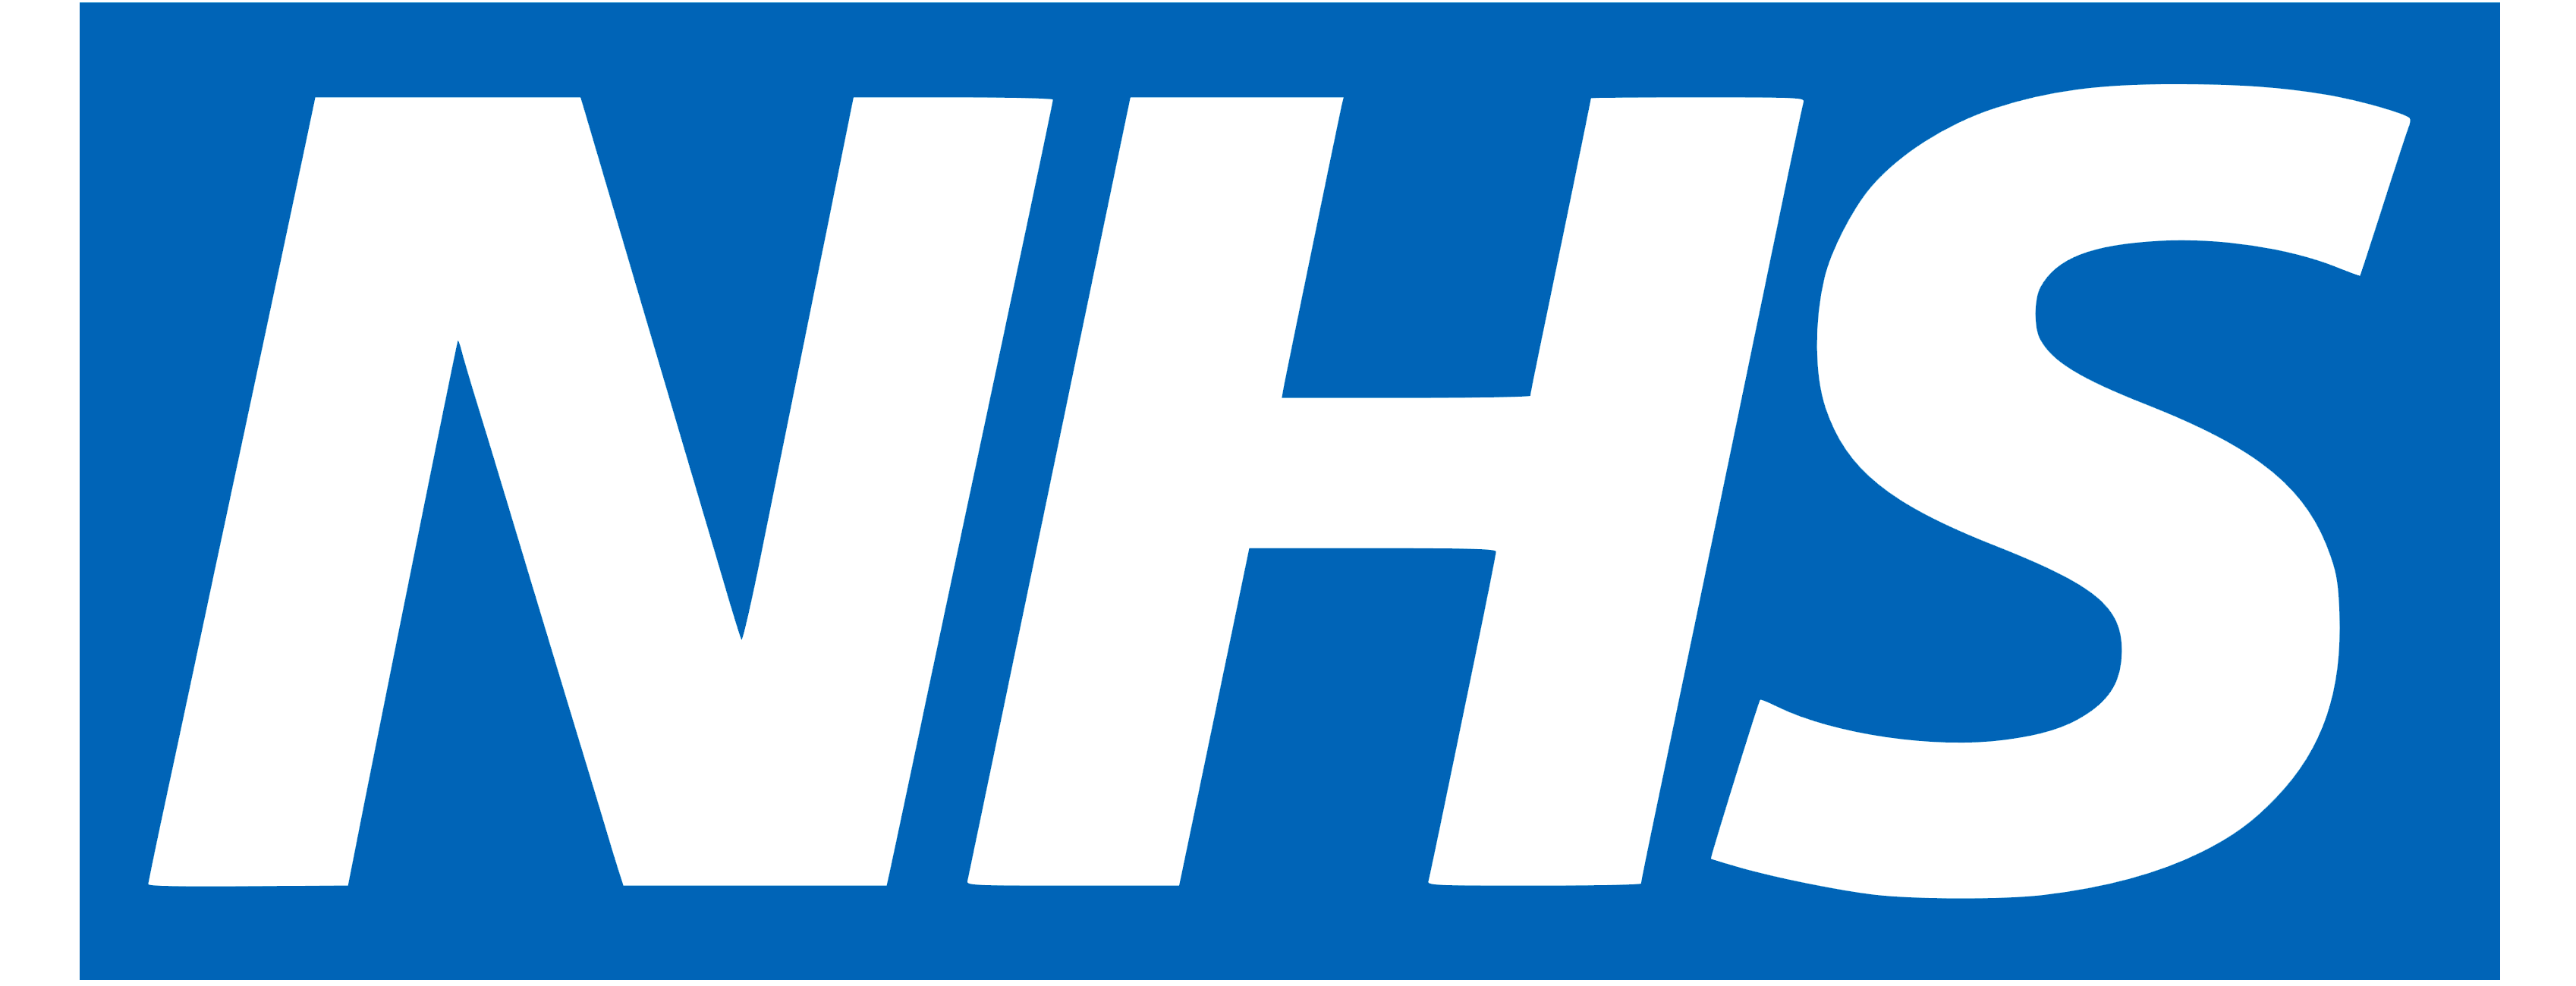 The logo for Lance Lane Medical Centre 